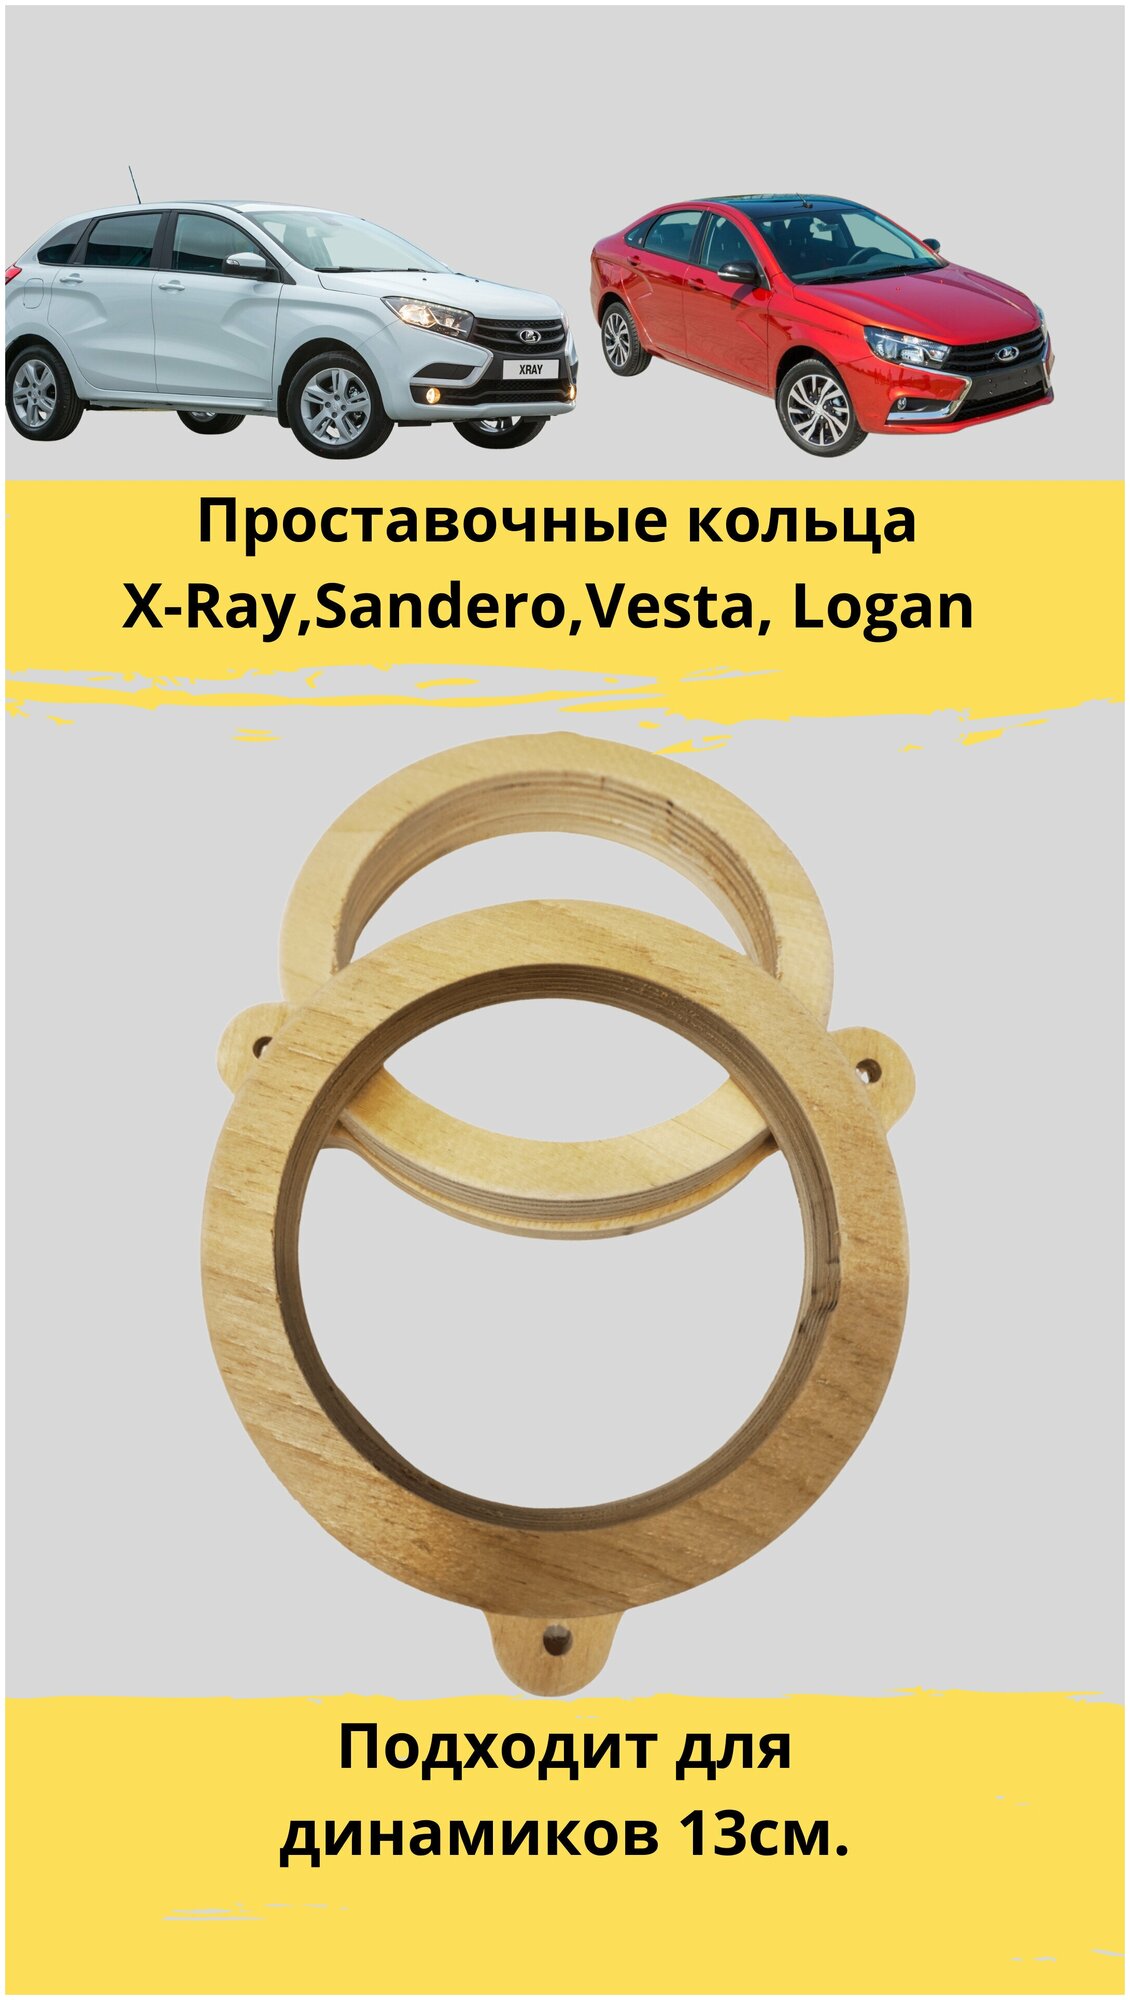 Проставочные кольца под установку динамиков для X-Ray, Sandero, Vesta, Logan 13 см